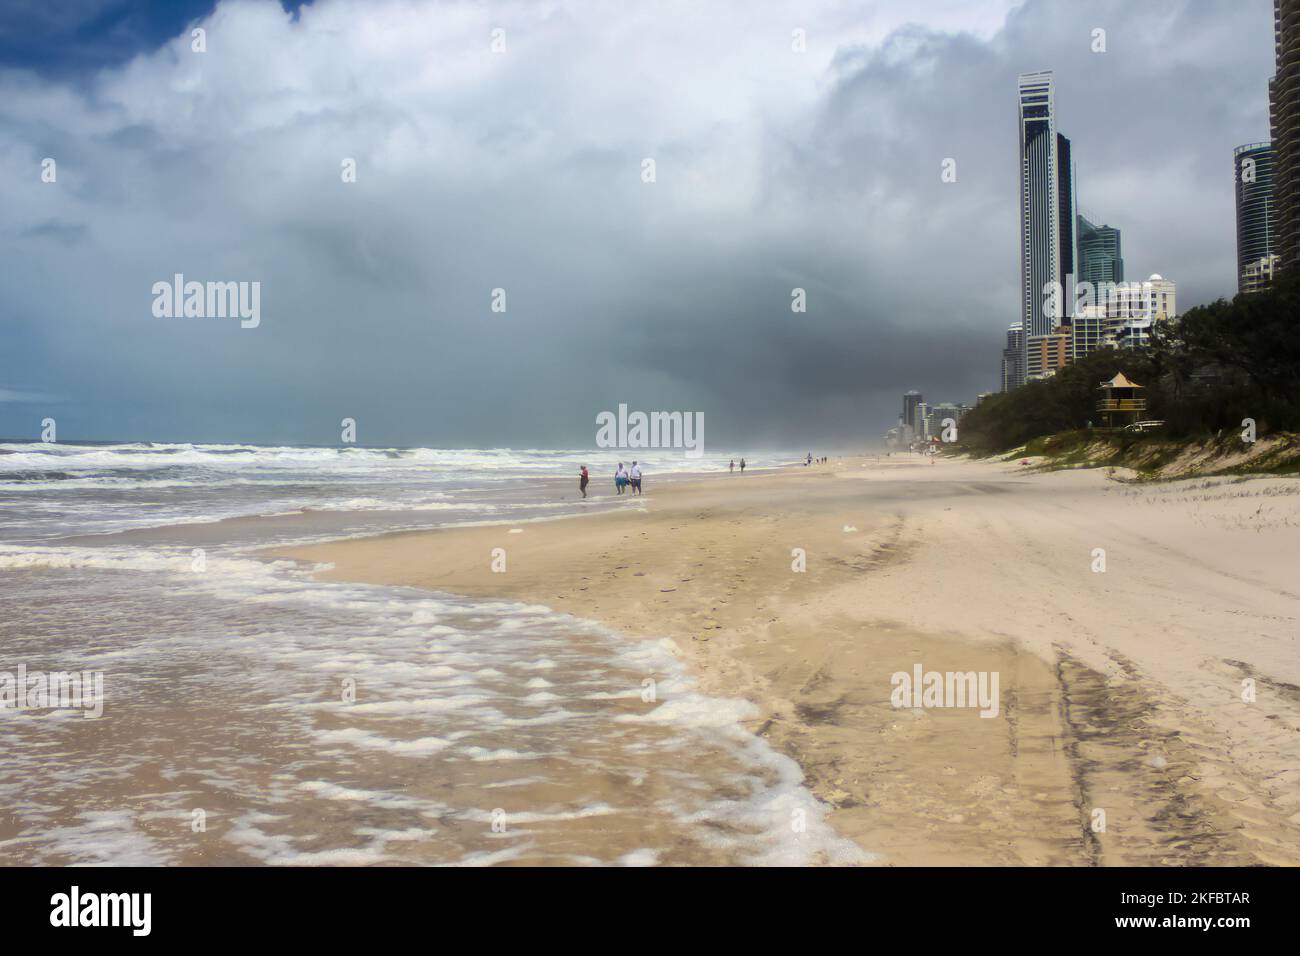 Des pistes de pneus et des touristes non identifiables sur la plage se frayant un chemin dans le surf le jour de la tempête avec des nuages sombres à Gold Coast - Surfers Paradise Australia avec c Banque D'Images